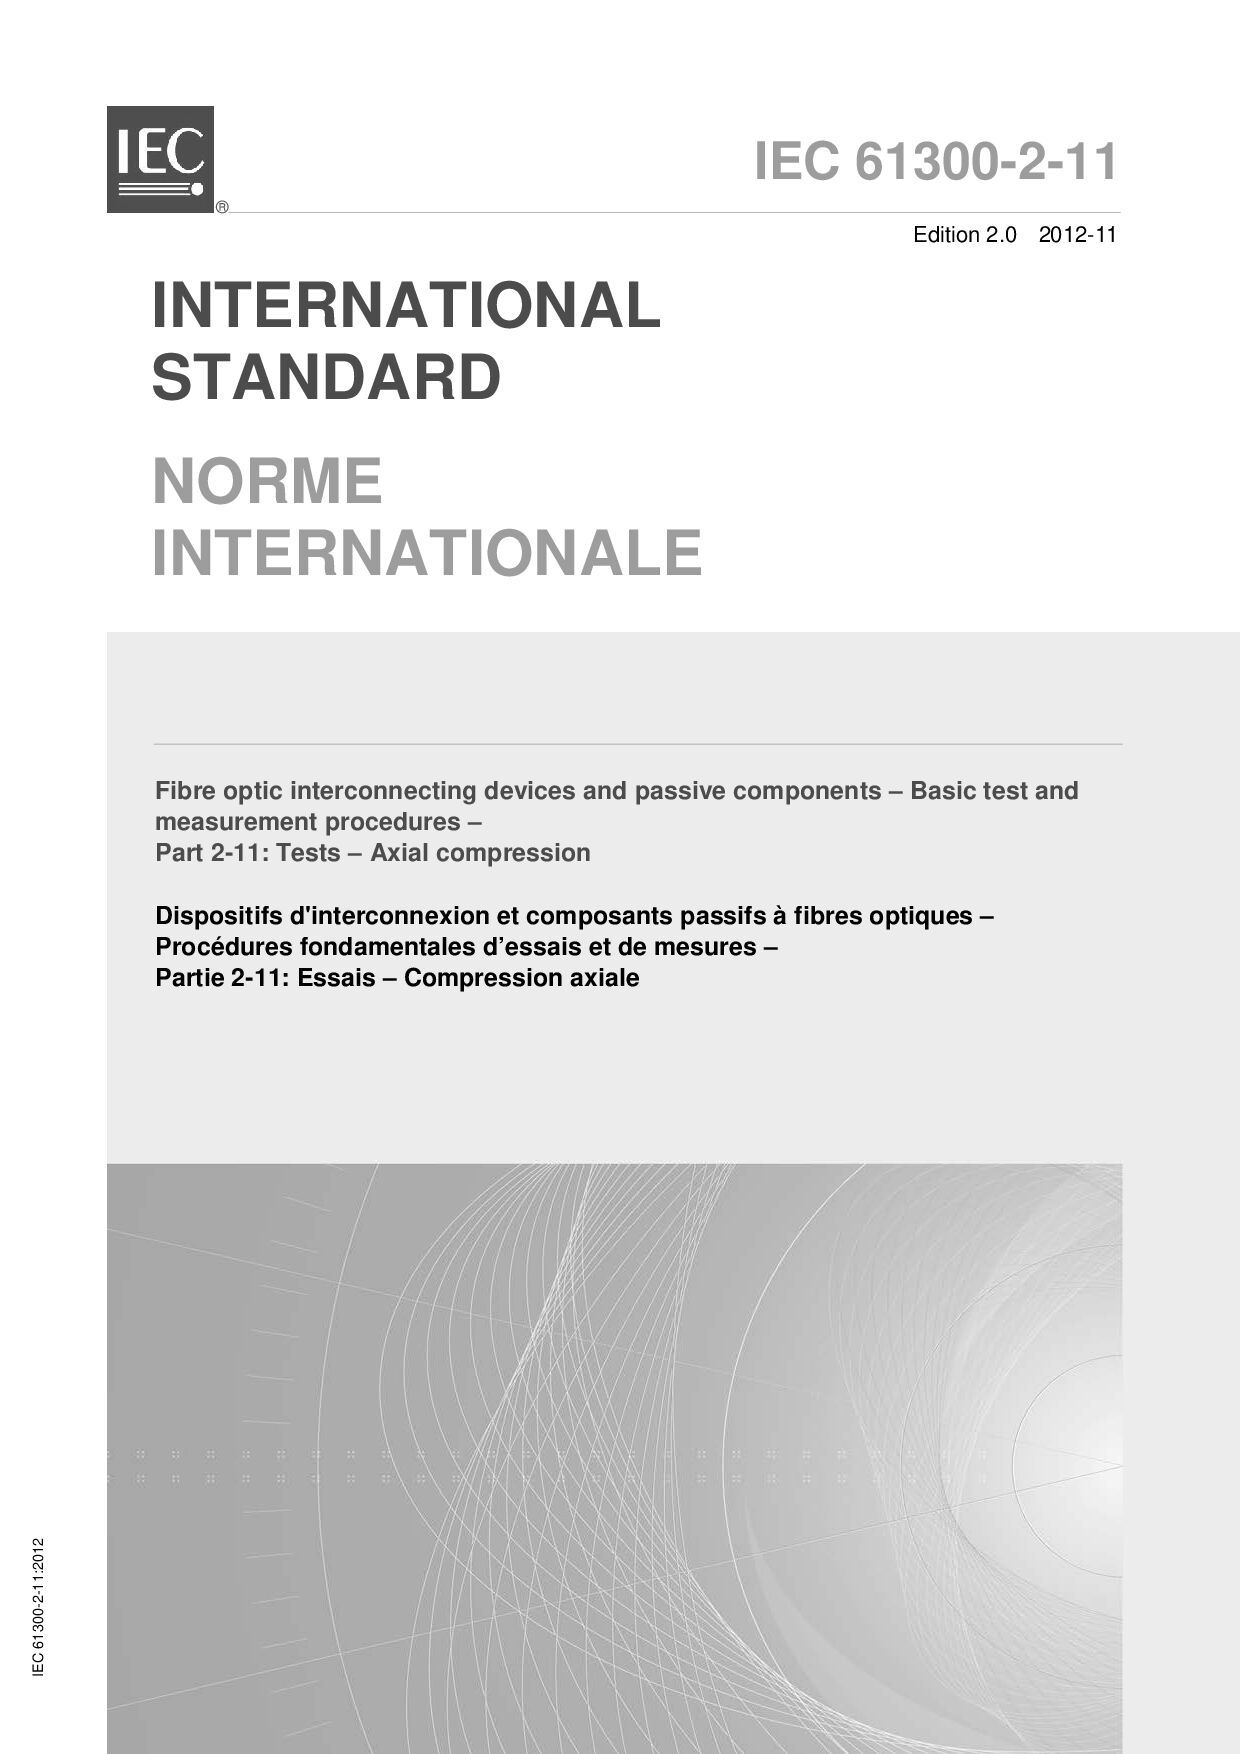 IEC 61300-2-11:2012封面图